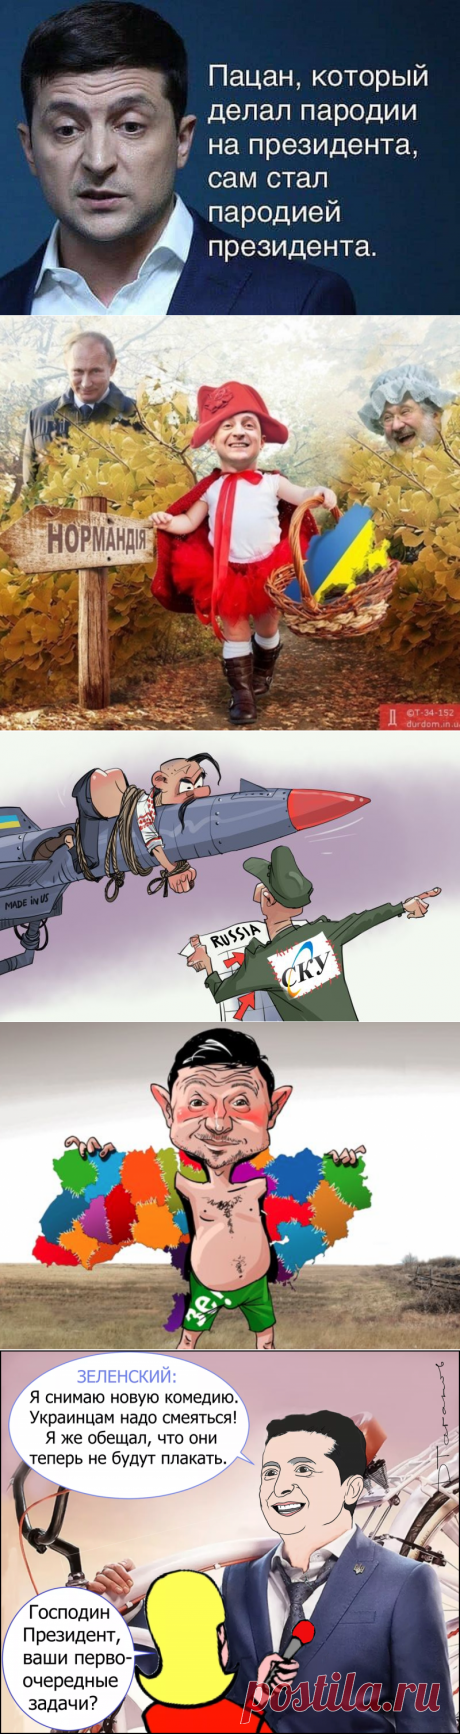 Смешные карикатуры на Зеленского. | Подснежник | Яндекс Дзен